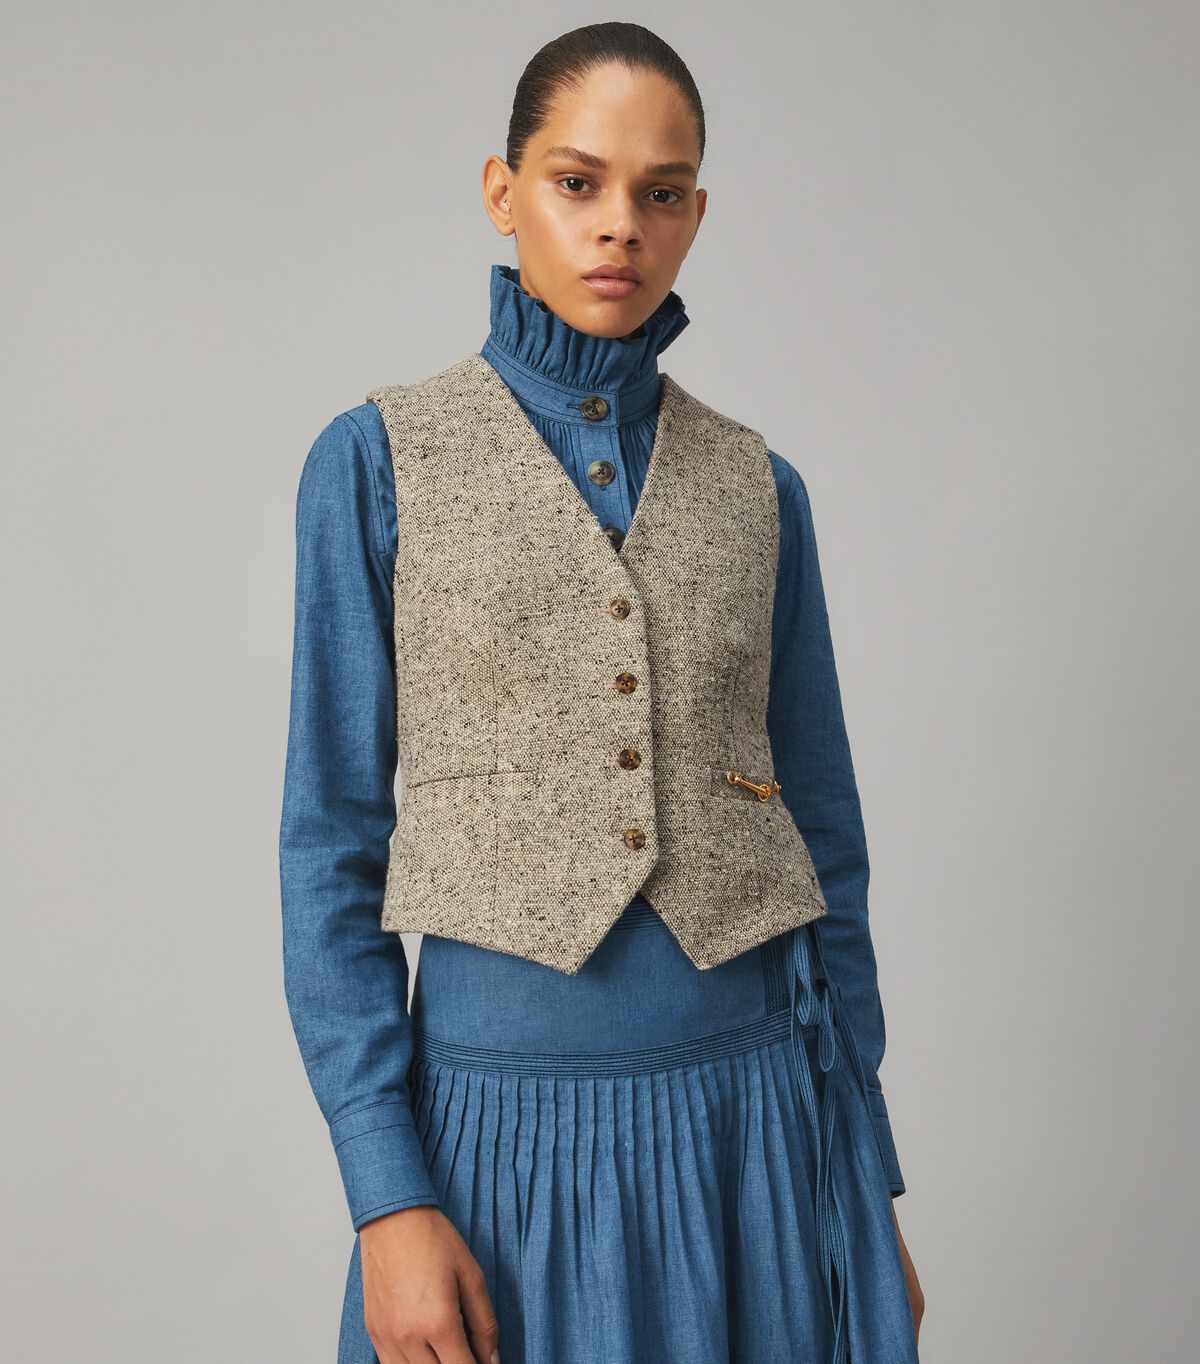 Linen Wool Vest